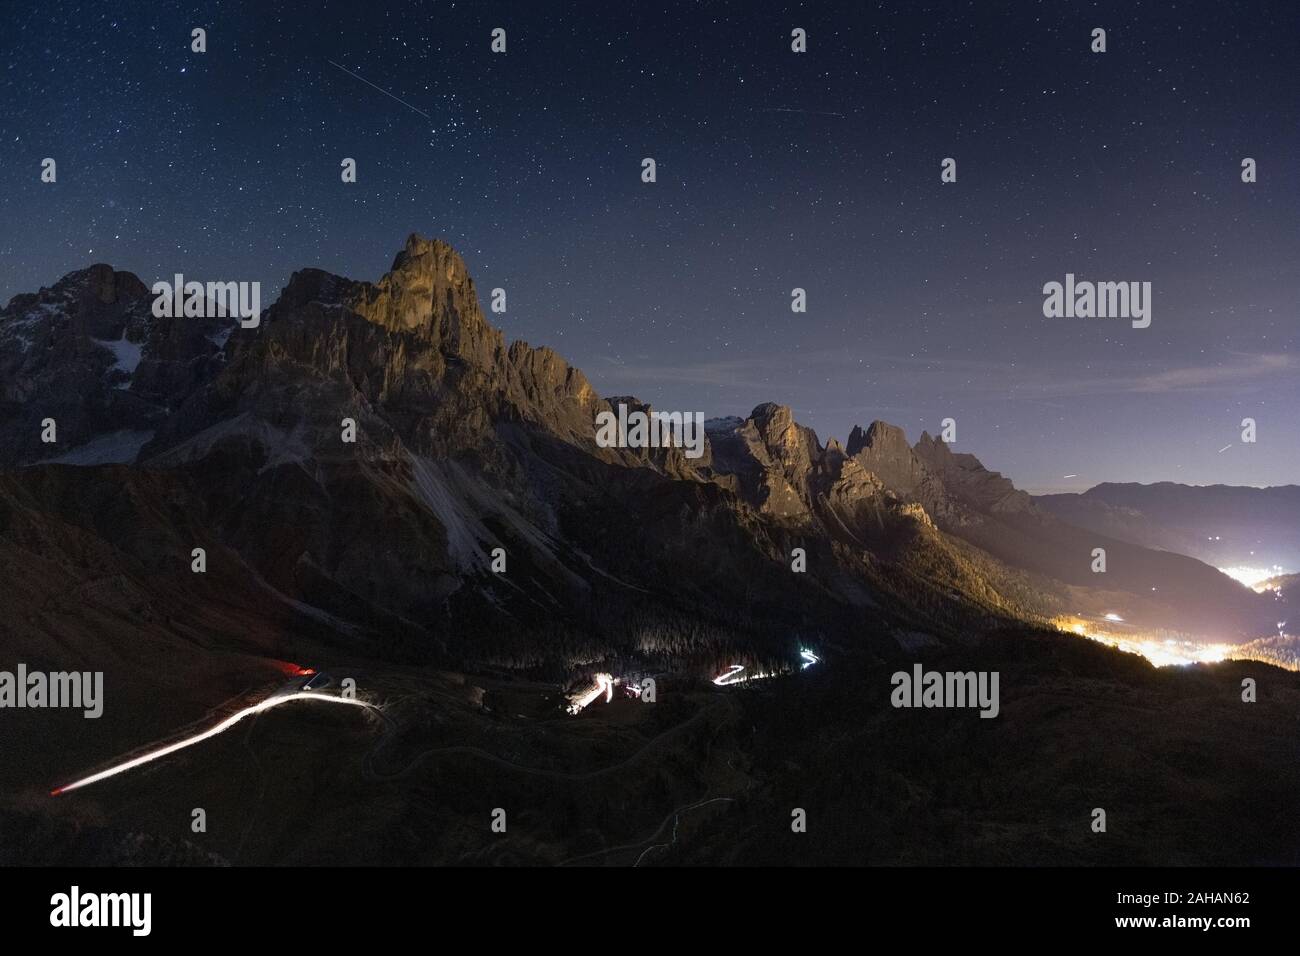 The Pale di San Martino mountain group. Passo Rolle and San Martino di Castrozza. Night Landscape. The Dolomites of Trentino. Italian Alps. Europe. Stock Photo